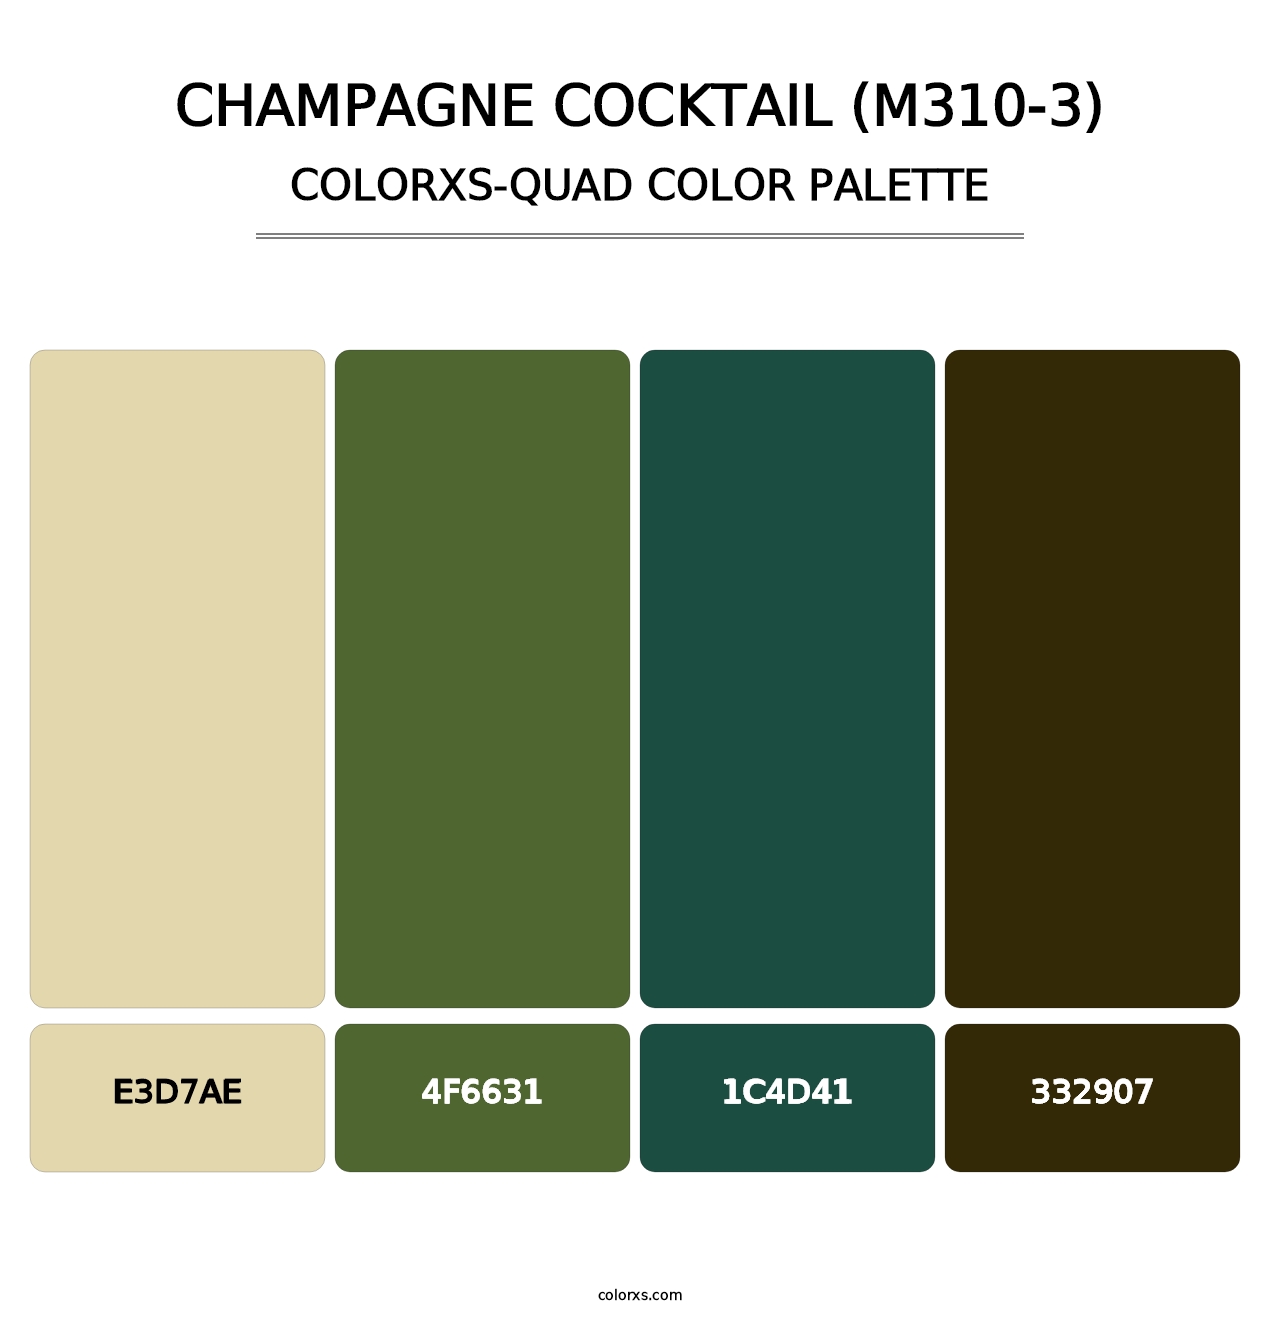 Champagne Cocktail (M310-3) - Colorxs Quad Palette